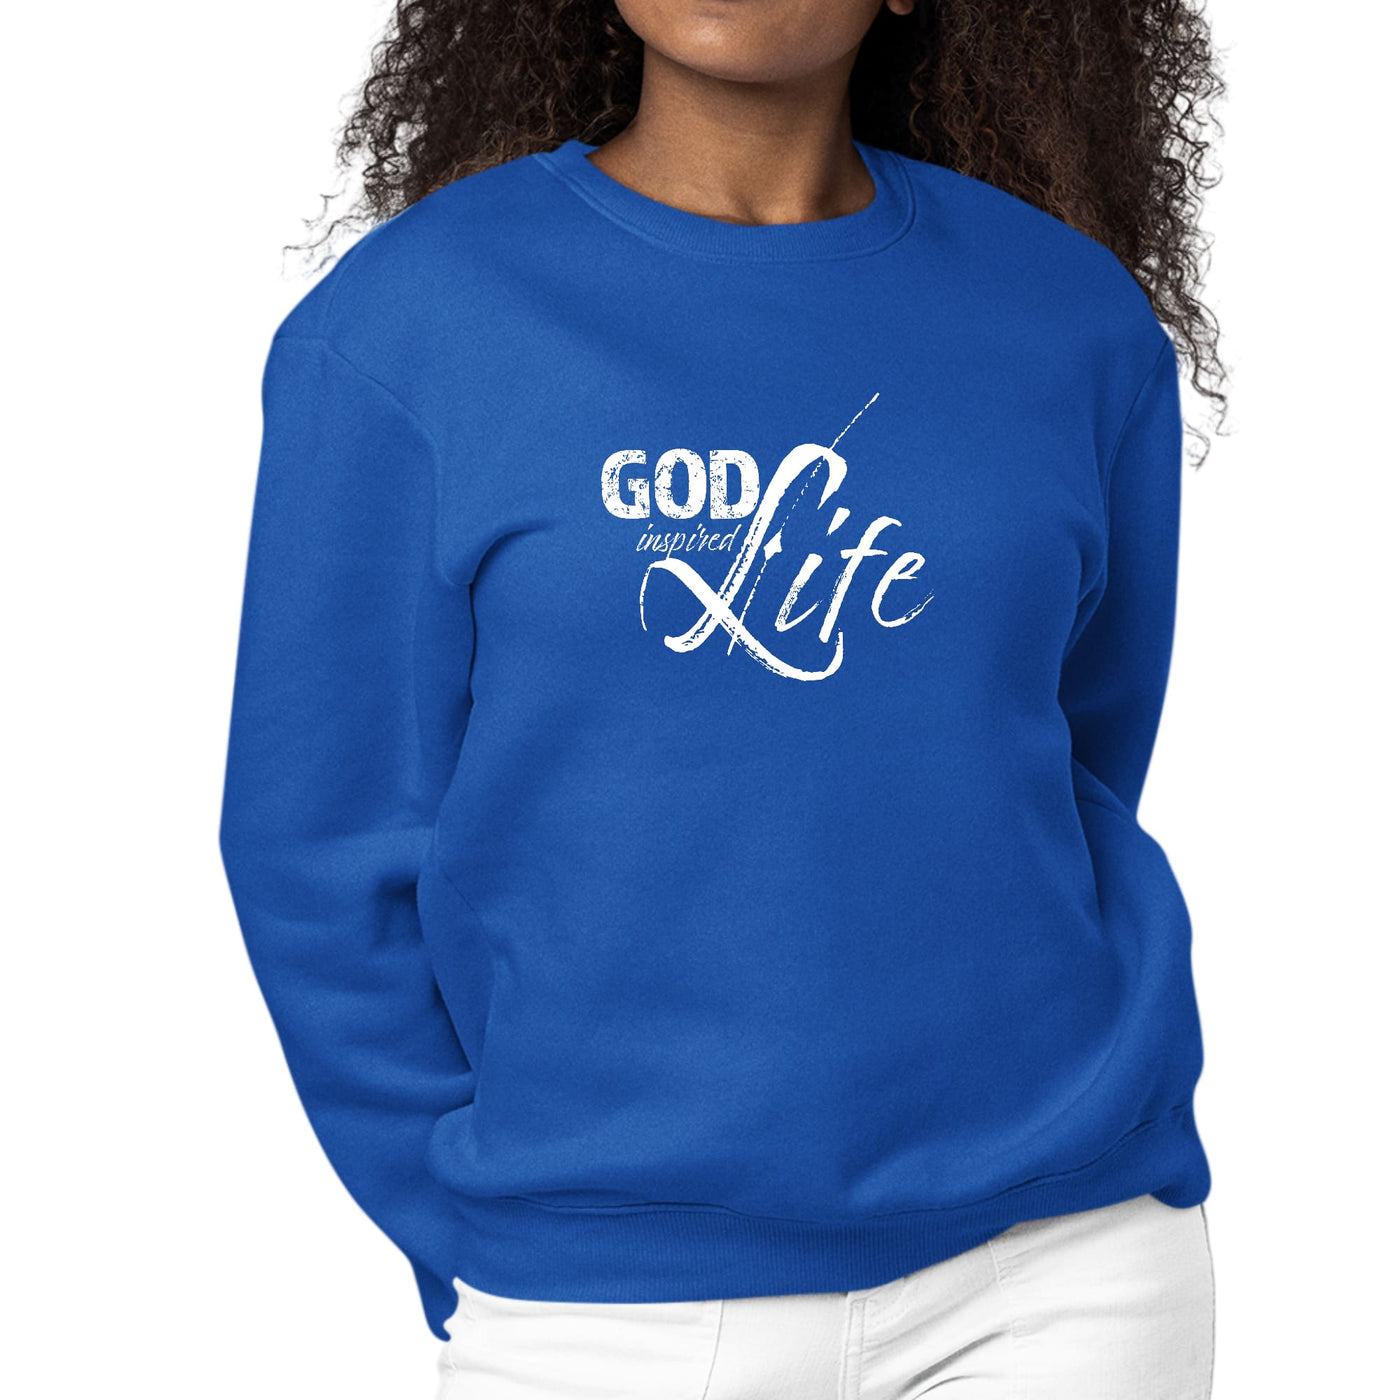 Womens Graphic Sweatshirt God Inspired Life - Womens | Sweatshirts